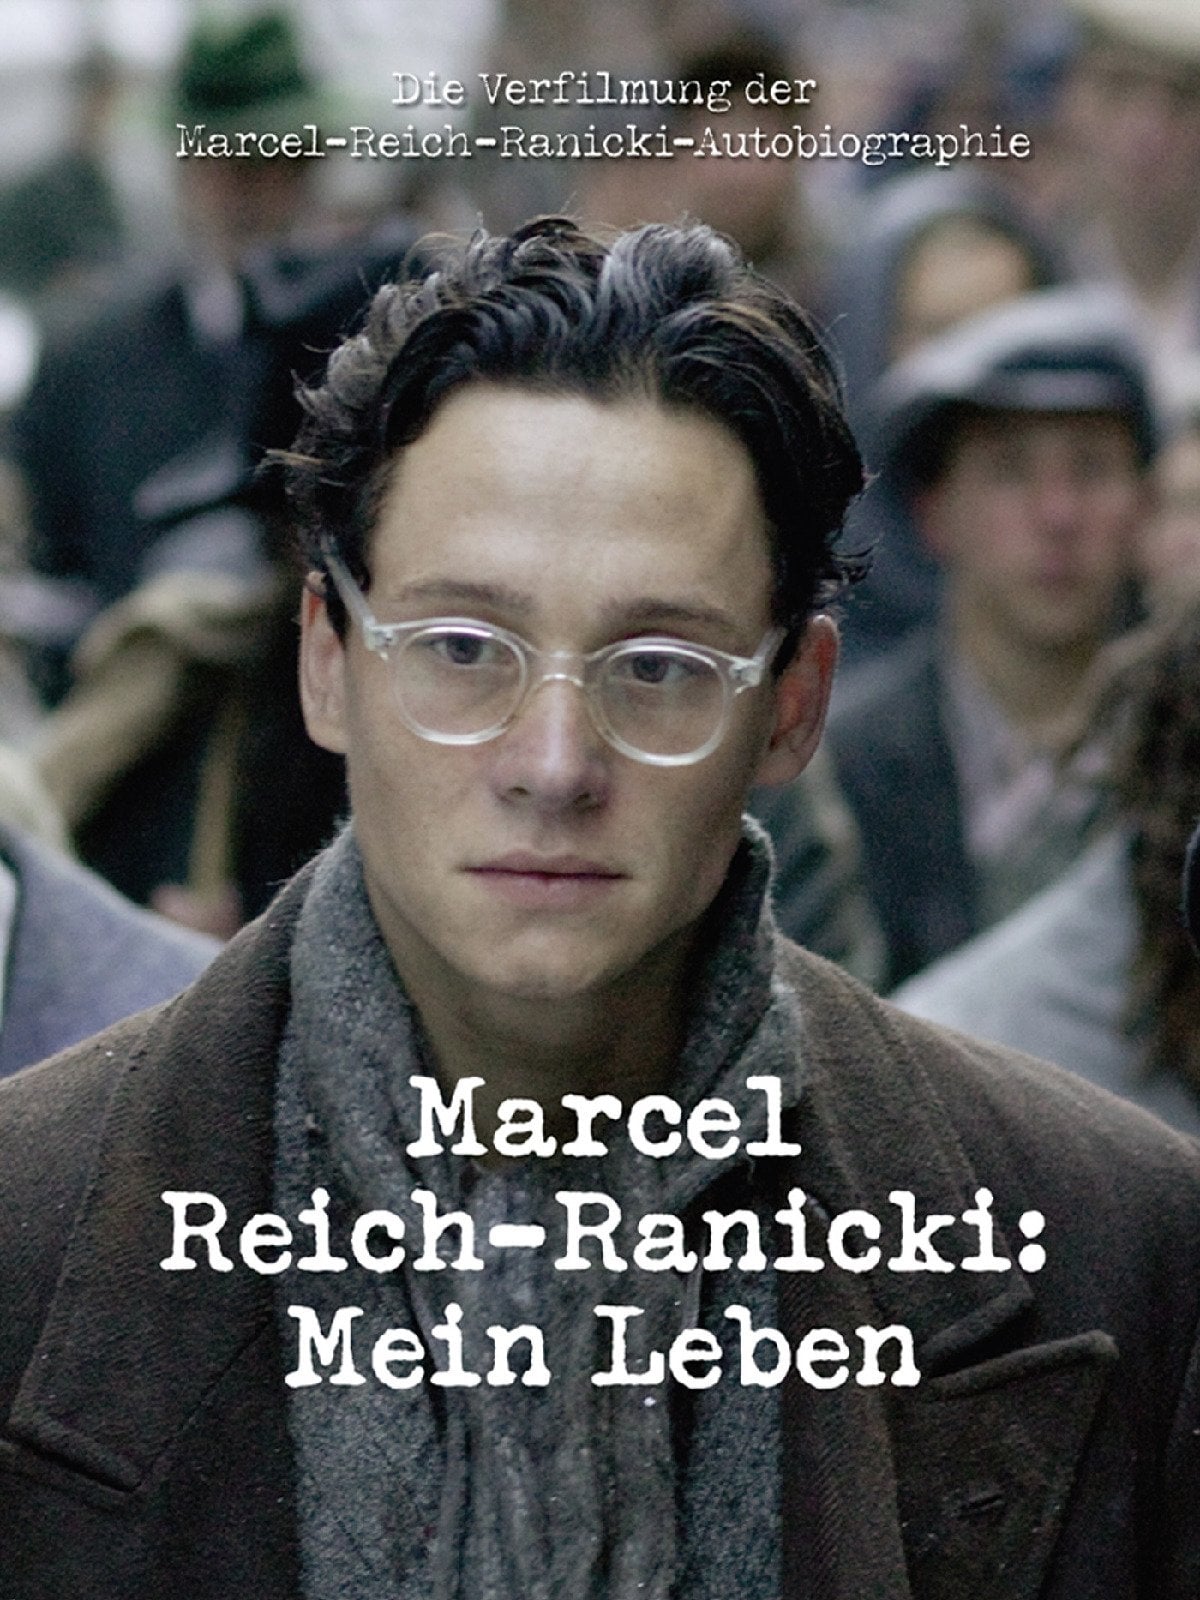 Plakat von "Marcel Reich-Ranicki - Mein Leben"